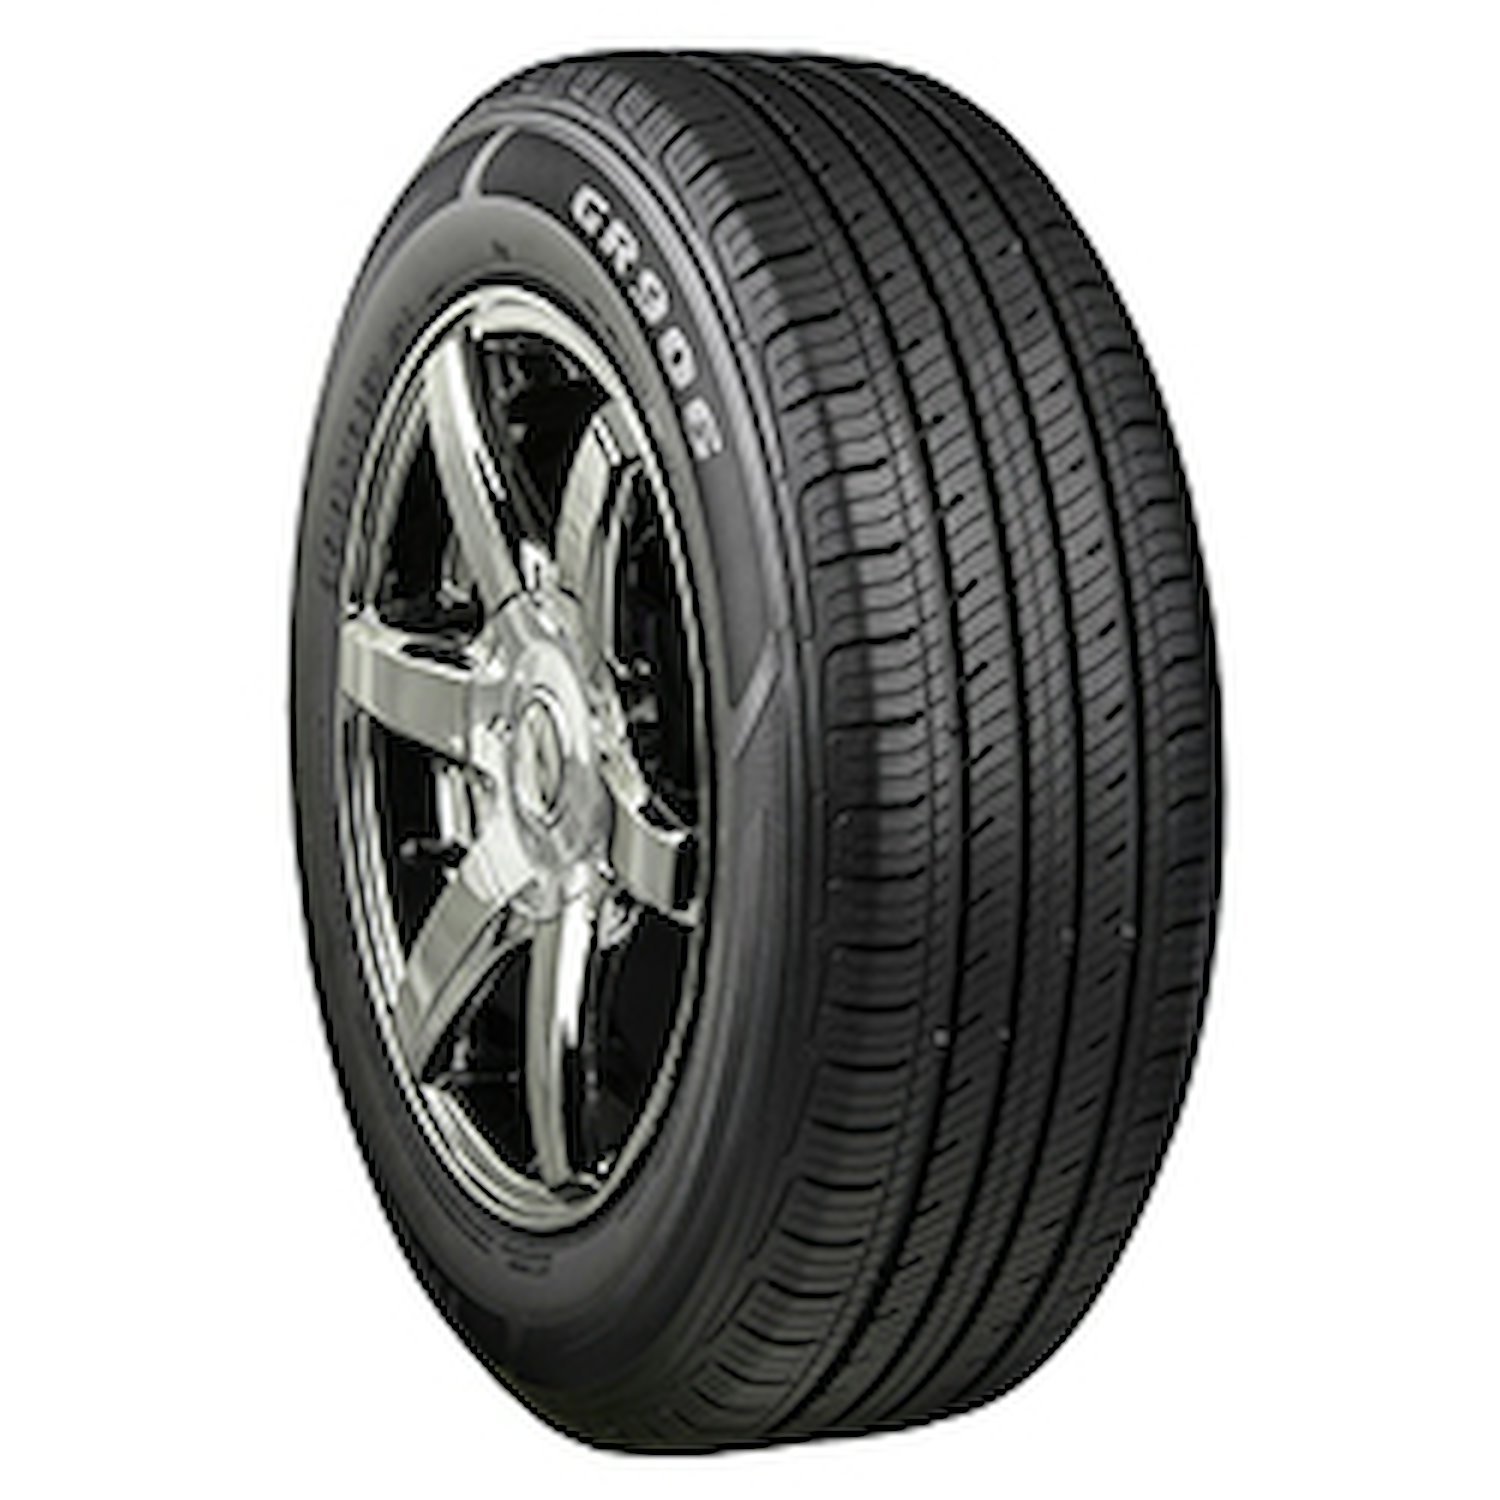 GR906 Tire, 205/55R17XL 95H